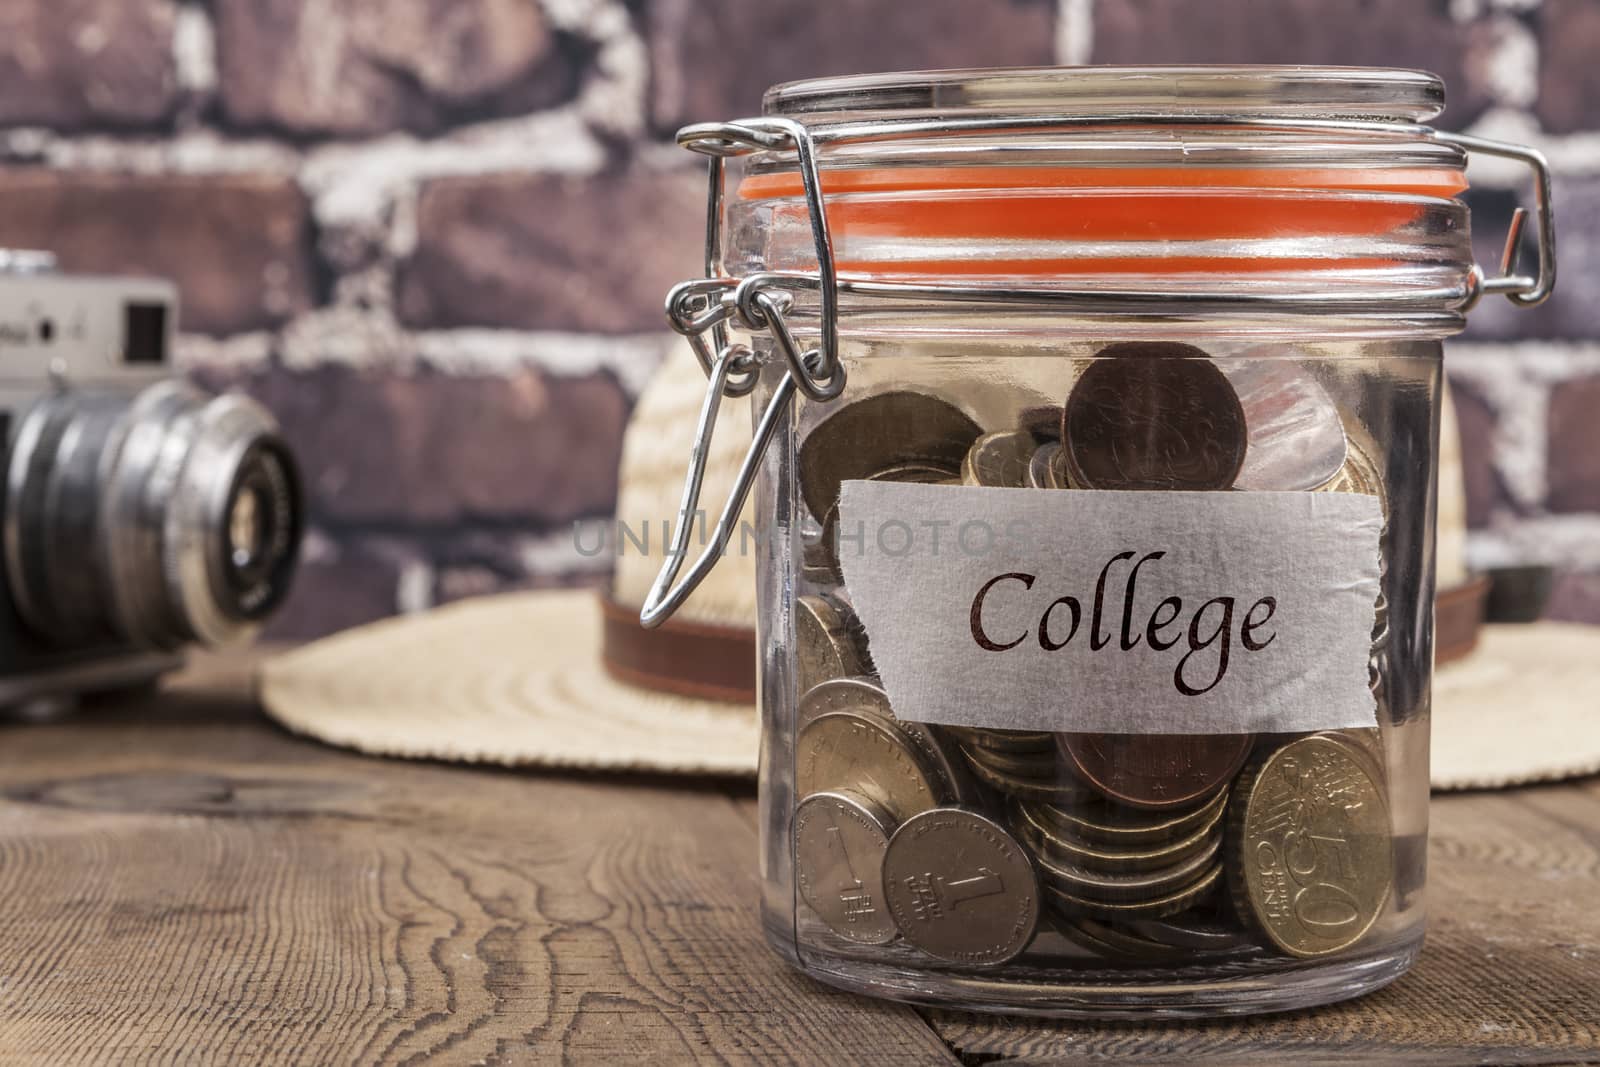 College Savings Jar by orcearo